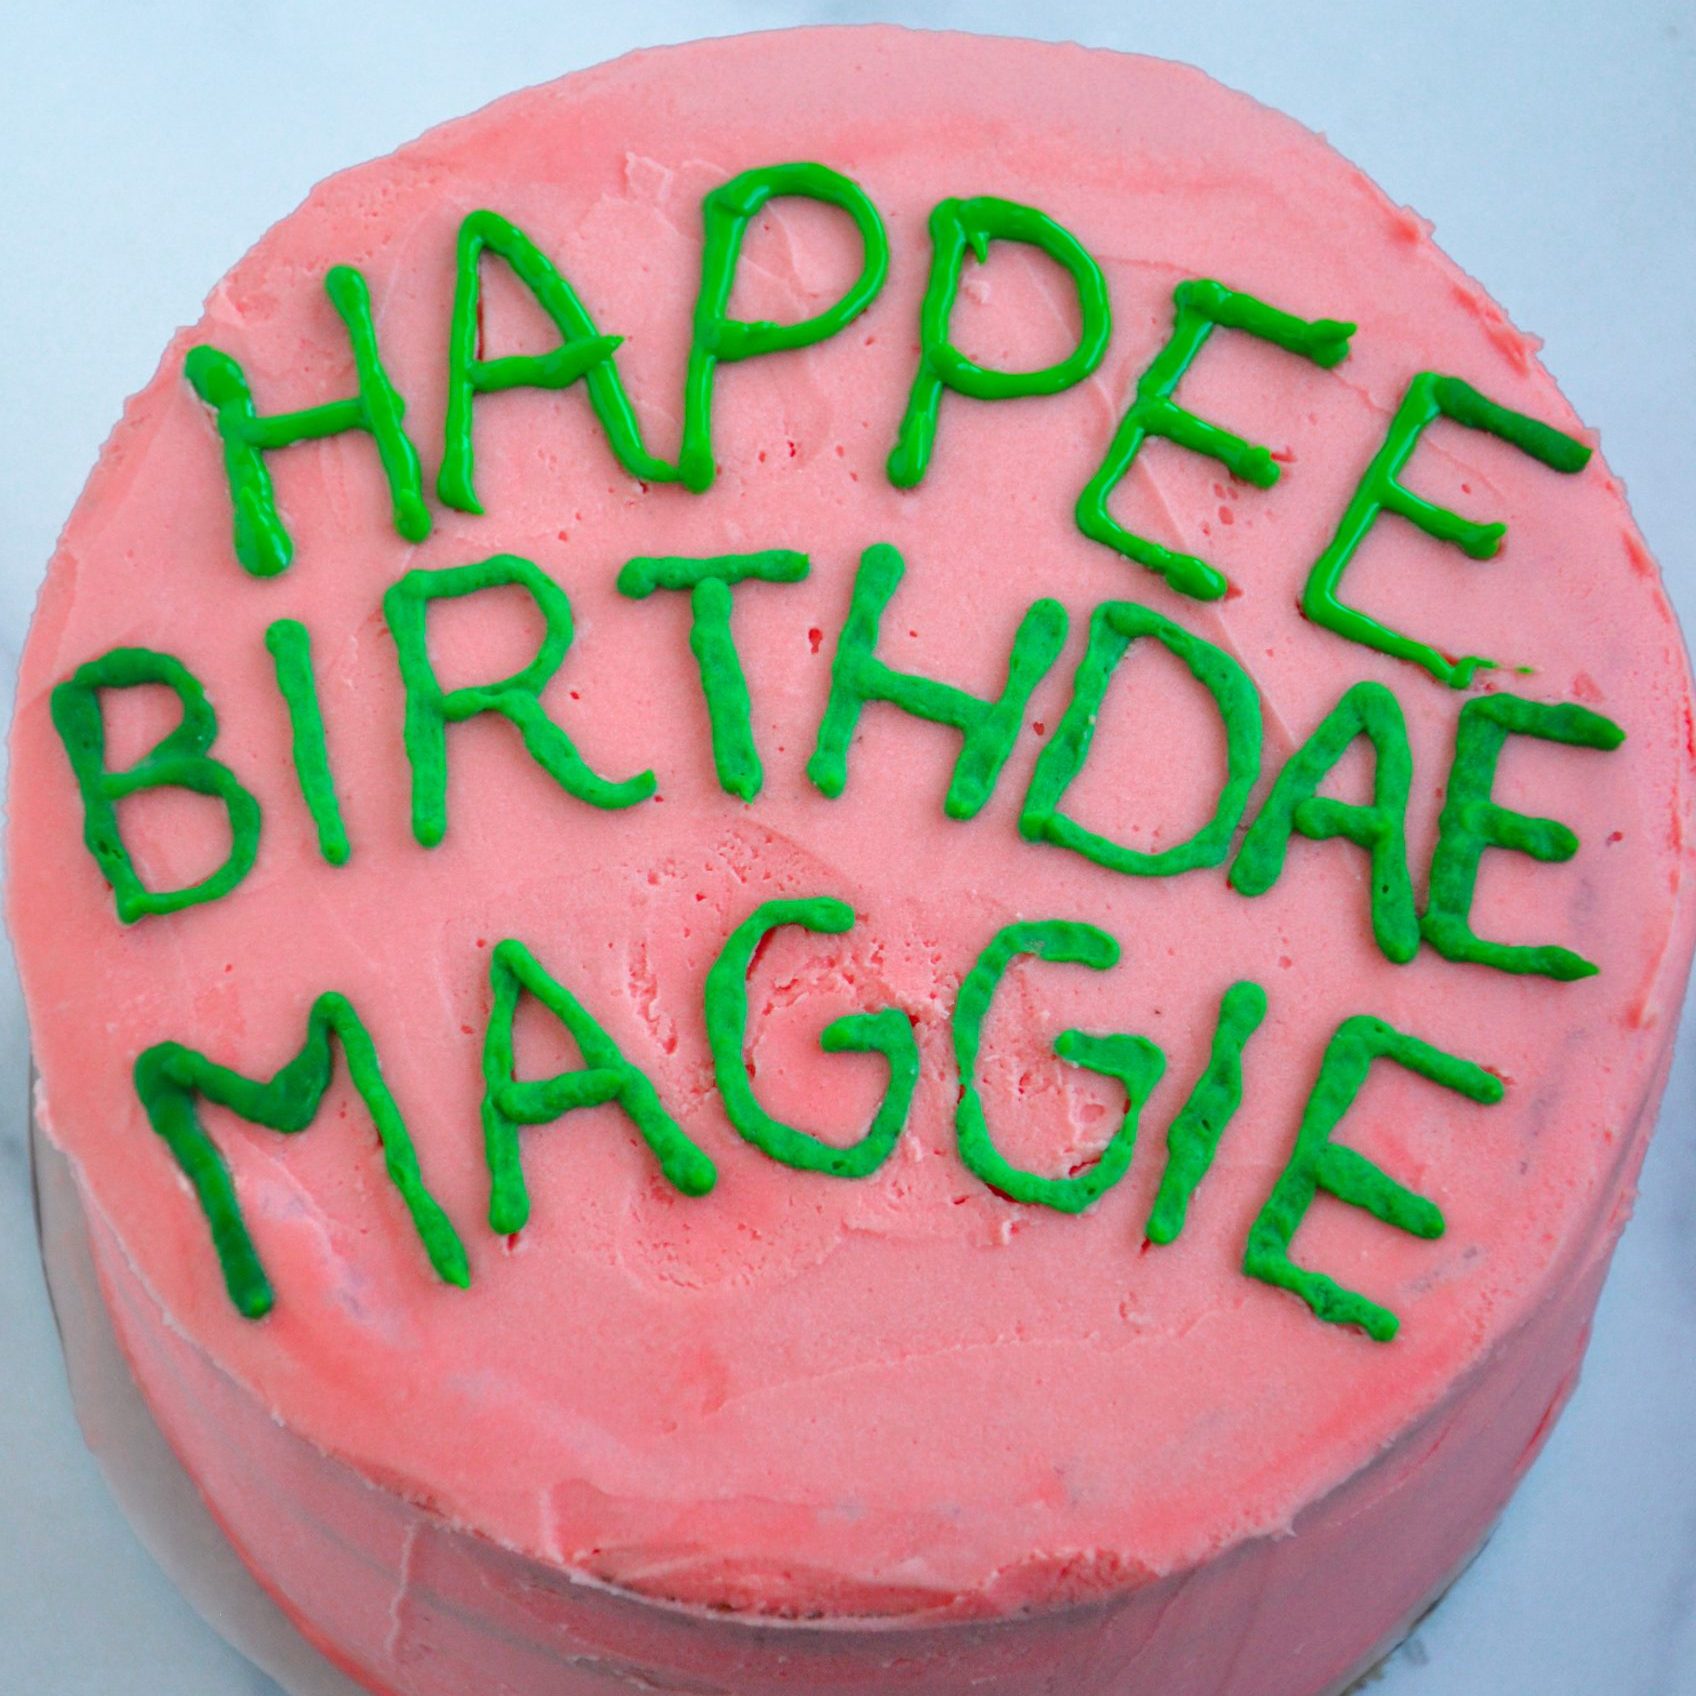 Harry Potter Hogwarts House Reveal Cake | CupcakeGirl - YouTube-hdcinema.vn